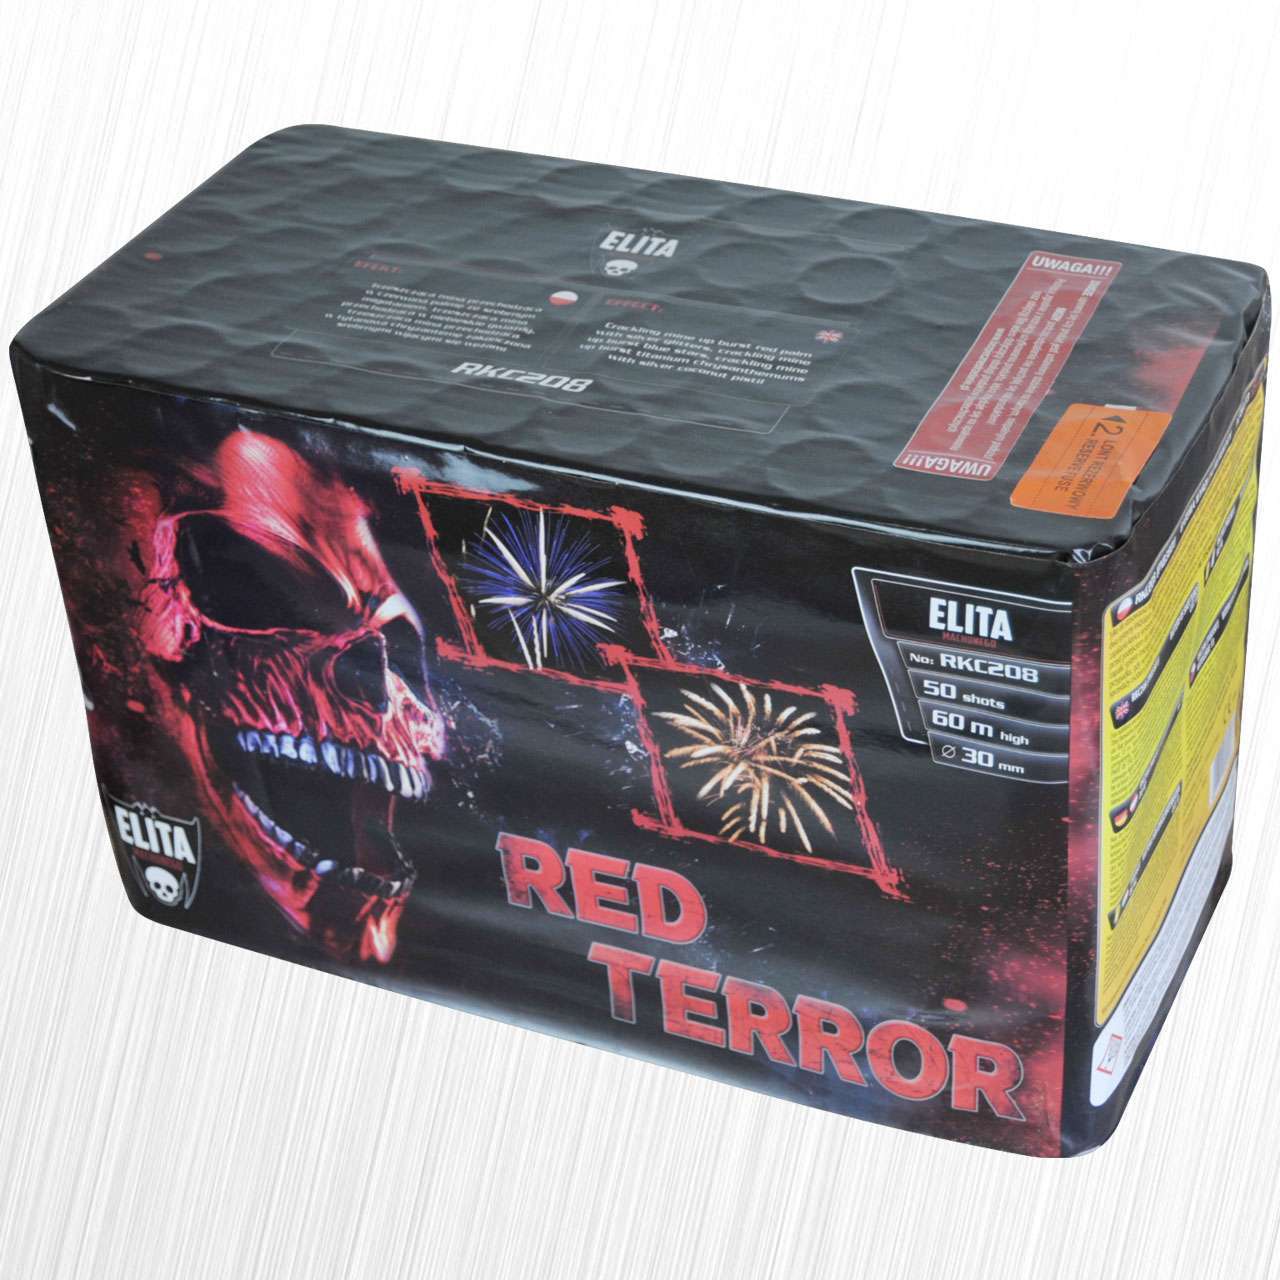 Red Terror RKC208 Bateria 50 strzałów ELITA MACHONEGO